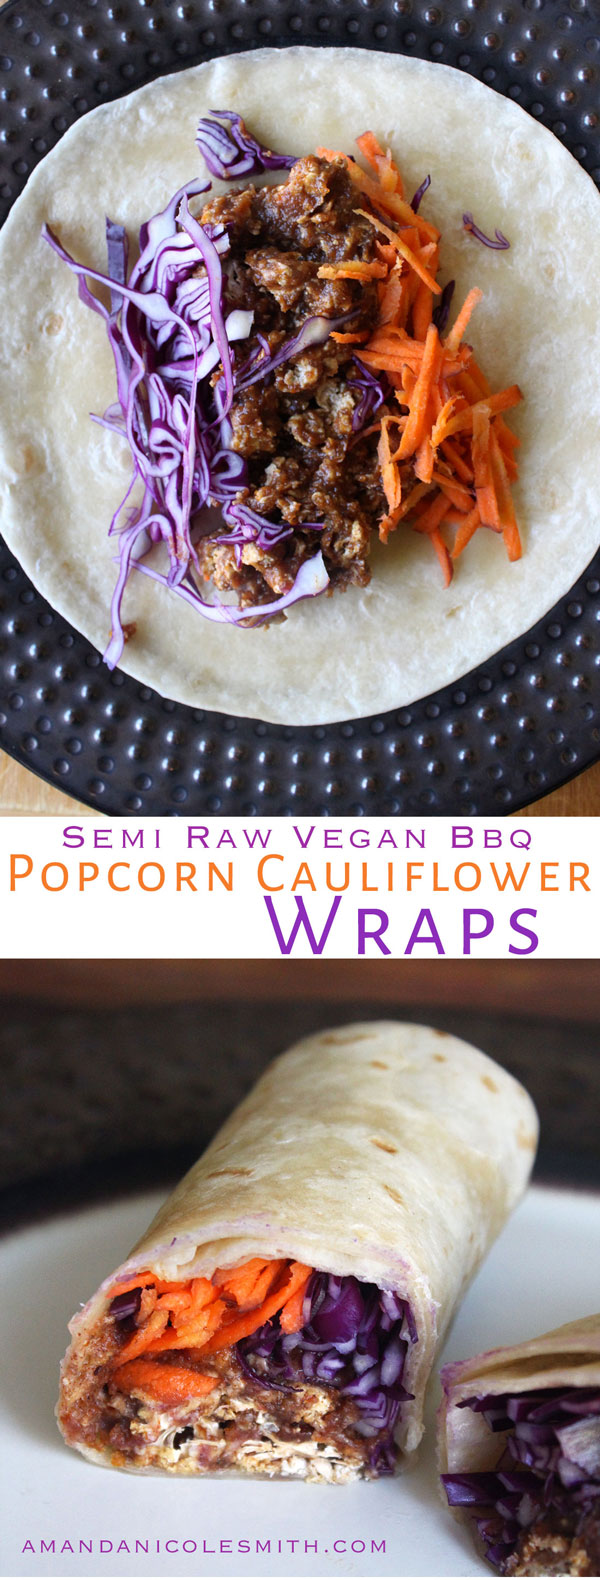 BBQ Popcorn Cauliflower Wraps